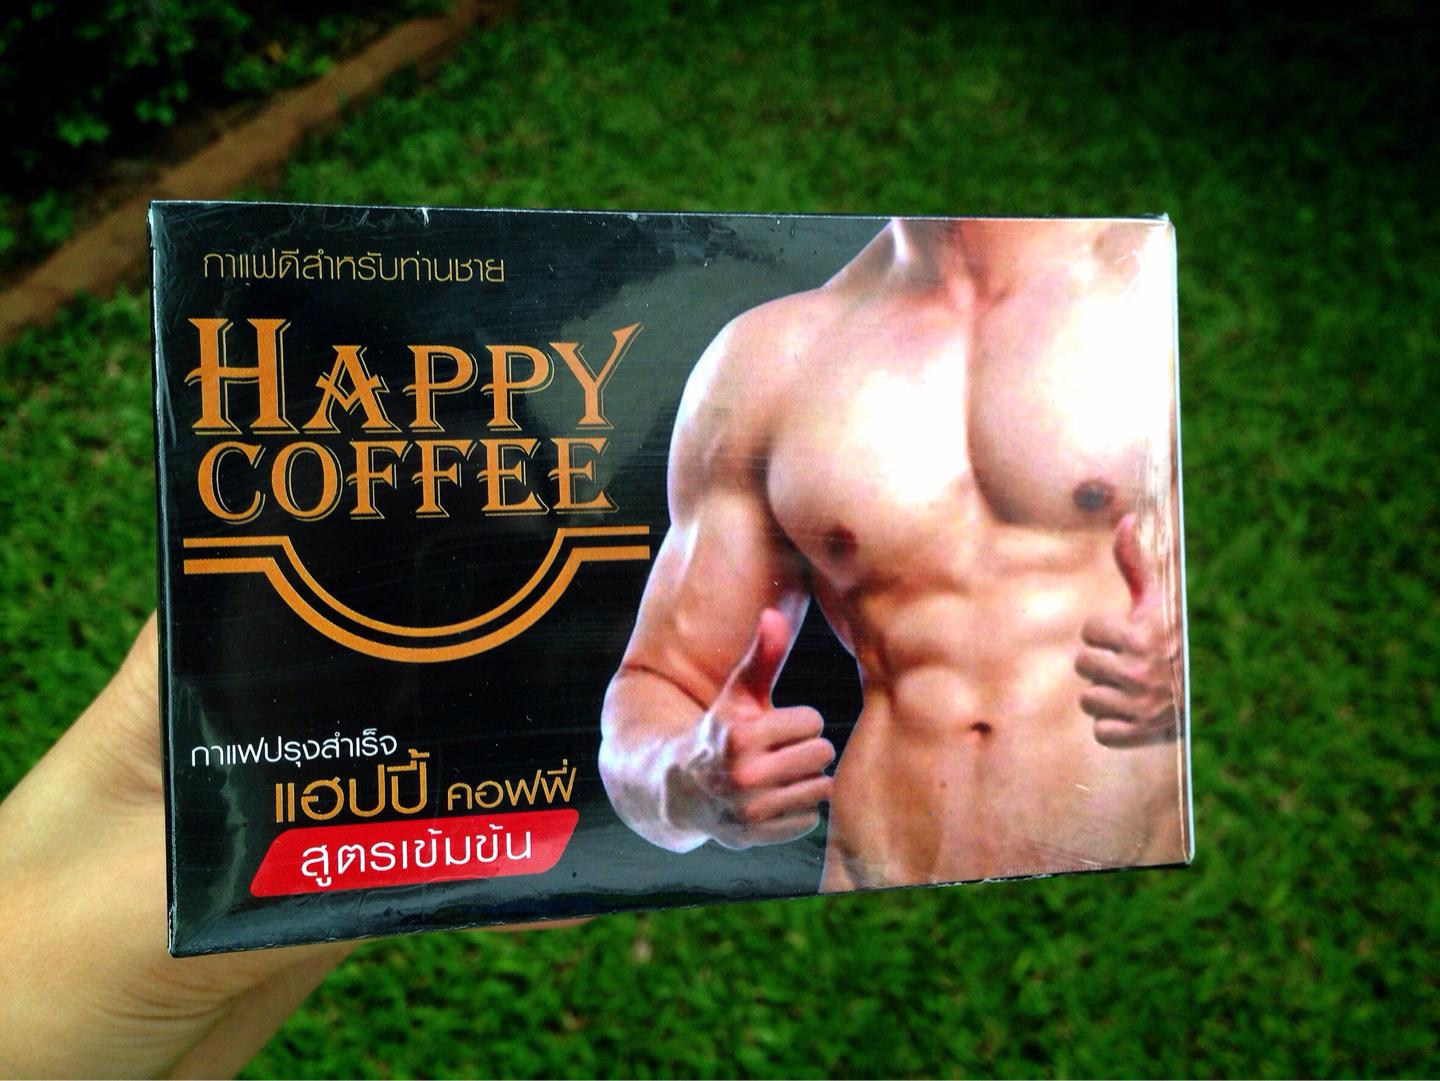 Happy Coffee แฮปปี้ คอฟฟี้ กาแฟสำหรับท่านชาย กาแฟปรุงแต่งสำเร็จรูป สูตรเข้มข้น